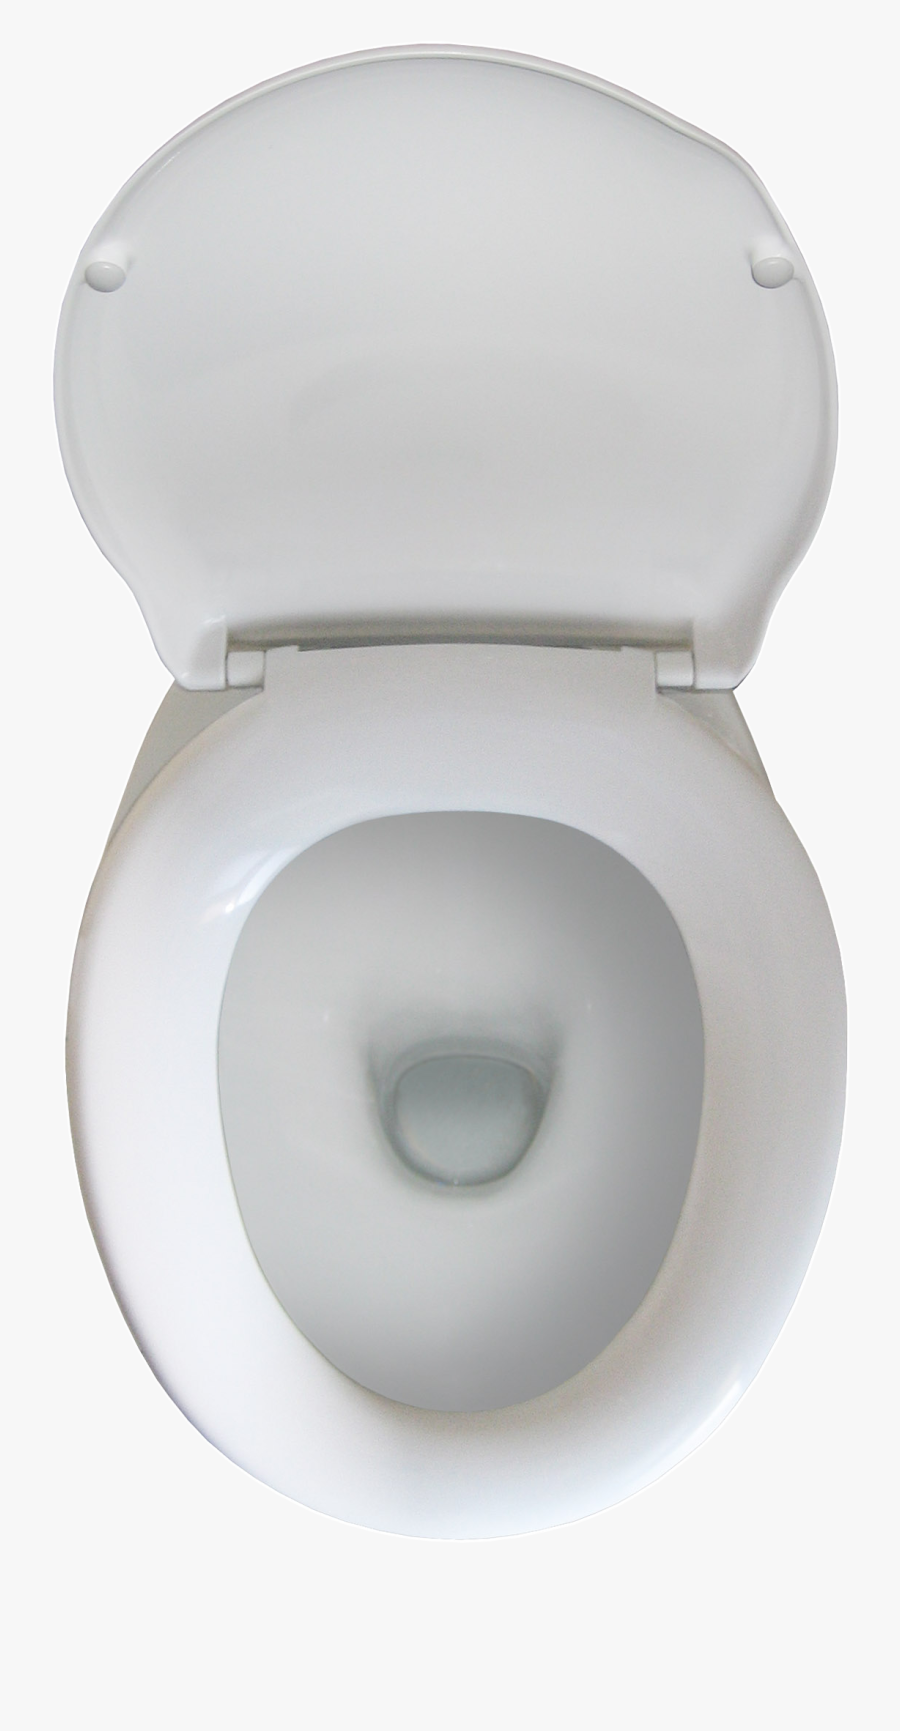 Toilet Pot Top View, Transparent Clipart